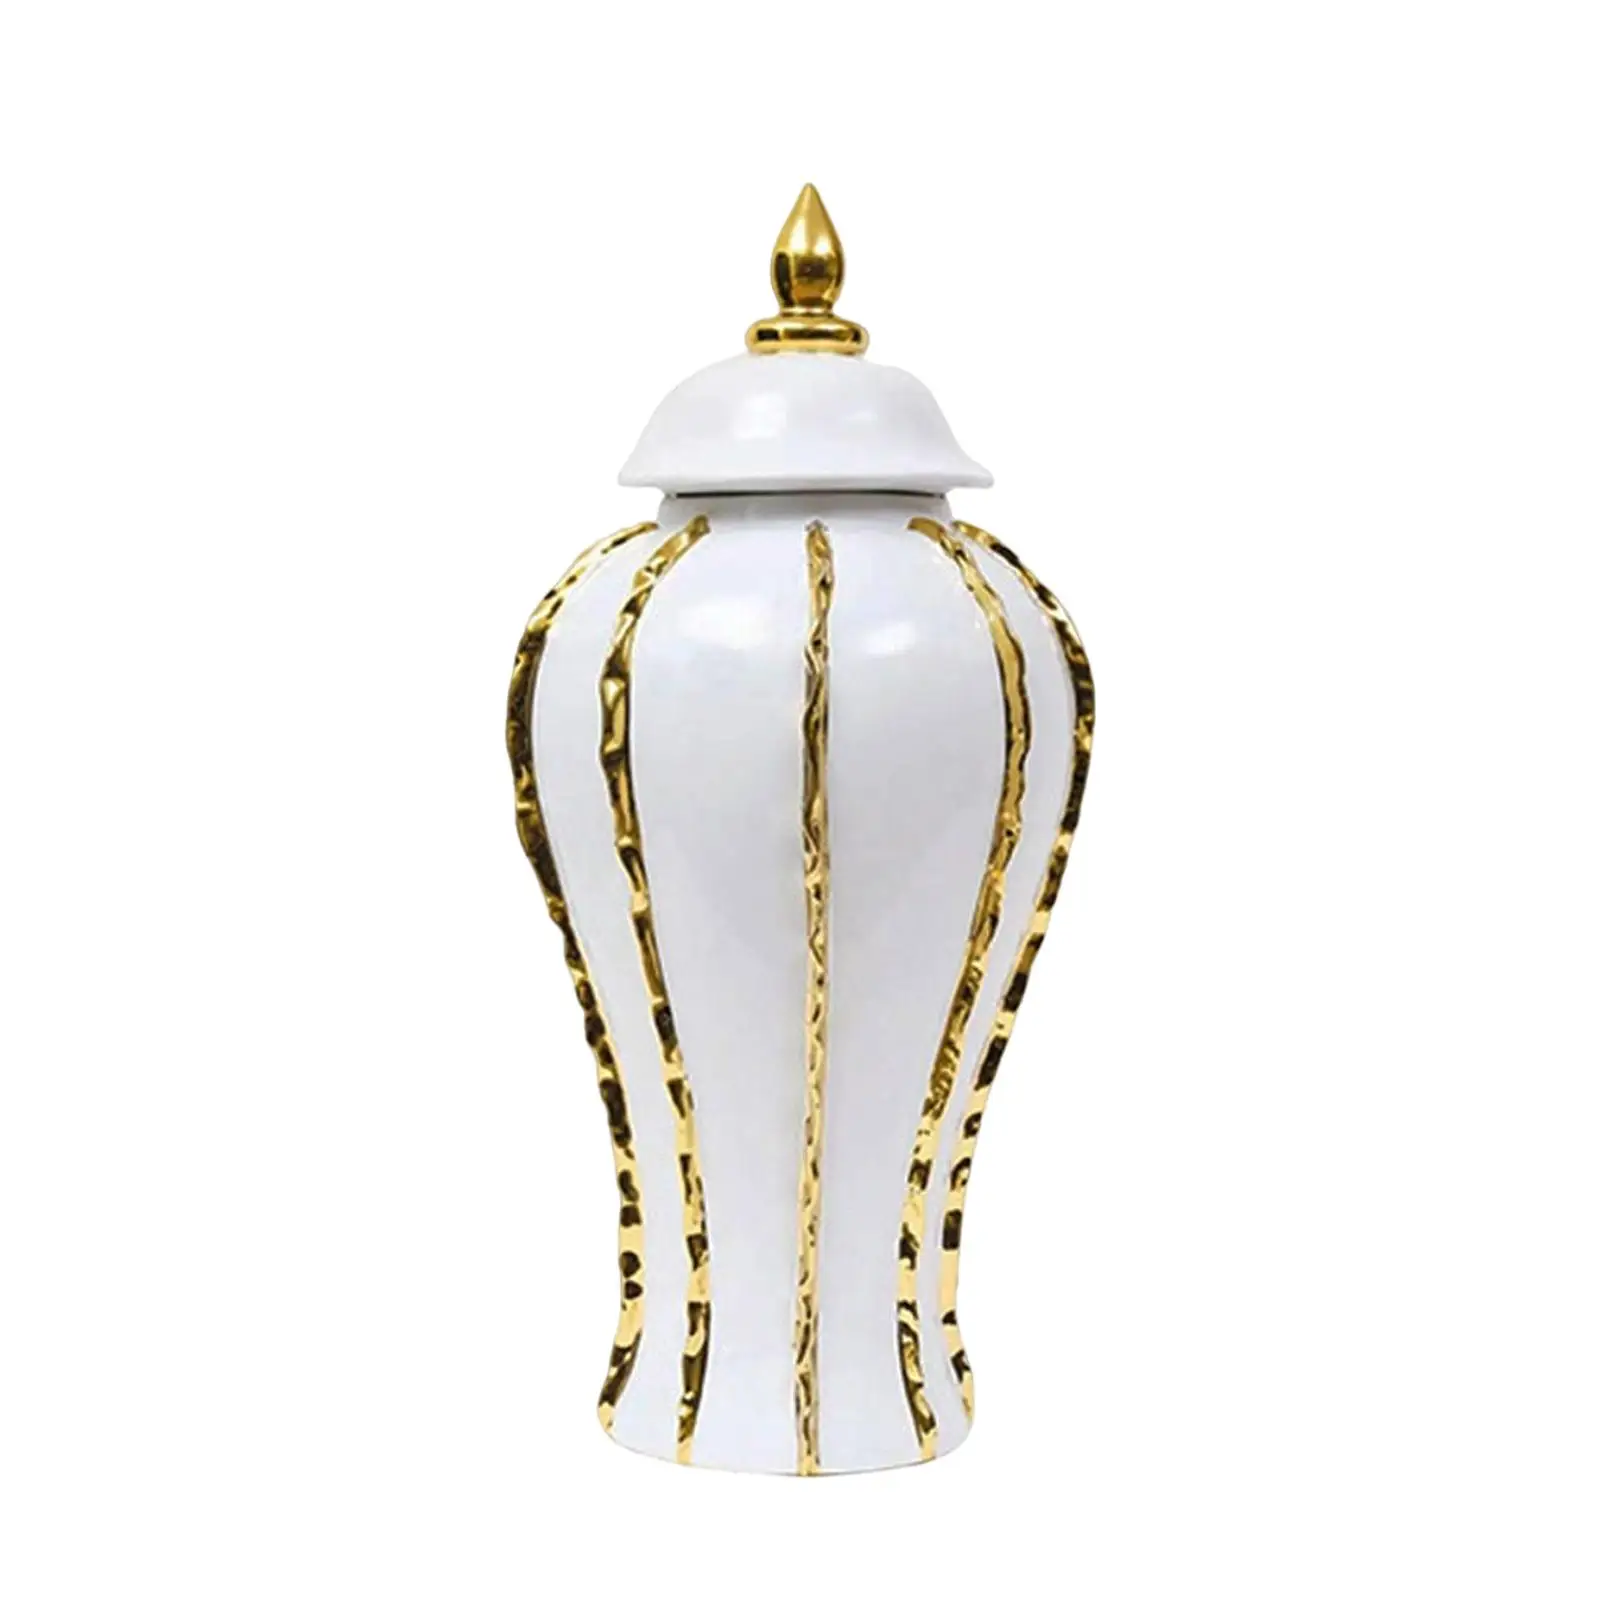 Luxury Ginger Jar, Temple Jar, Ginger Jar Vase, White And Gold Ceramic Jar with